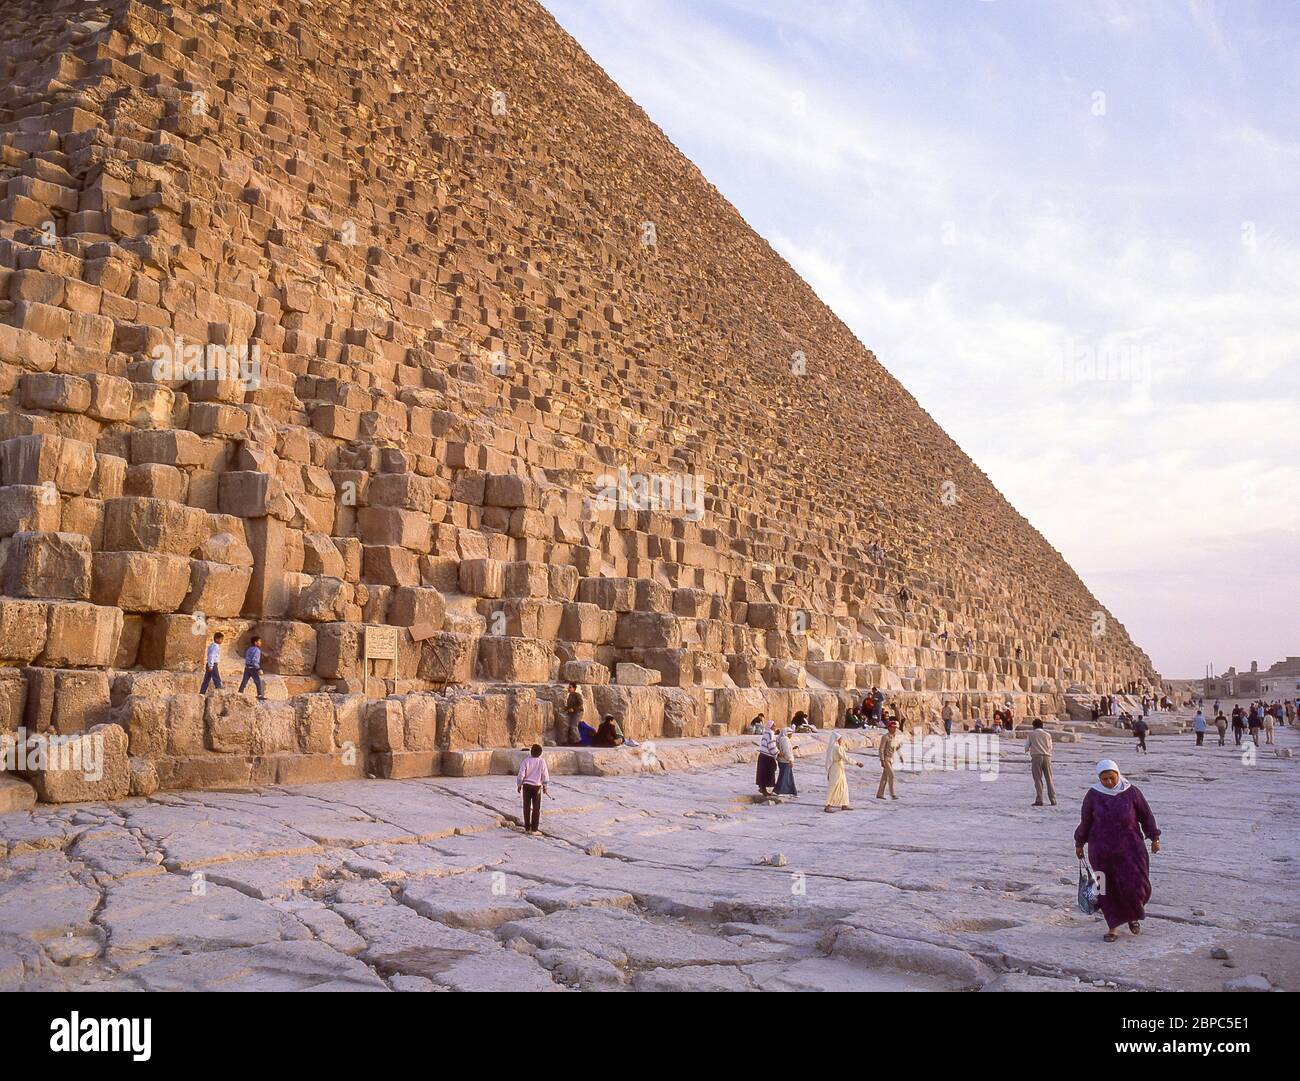 La Grande Piramide di Giza, Giza, Giza Governato, Repubblica d'Egitto Foto Stock